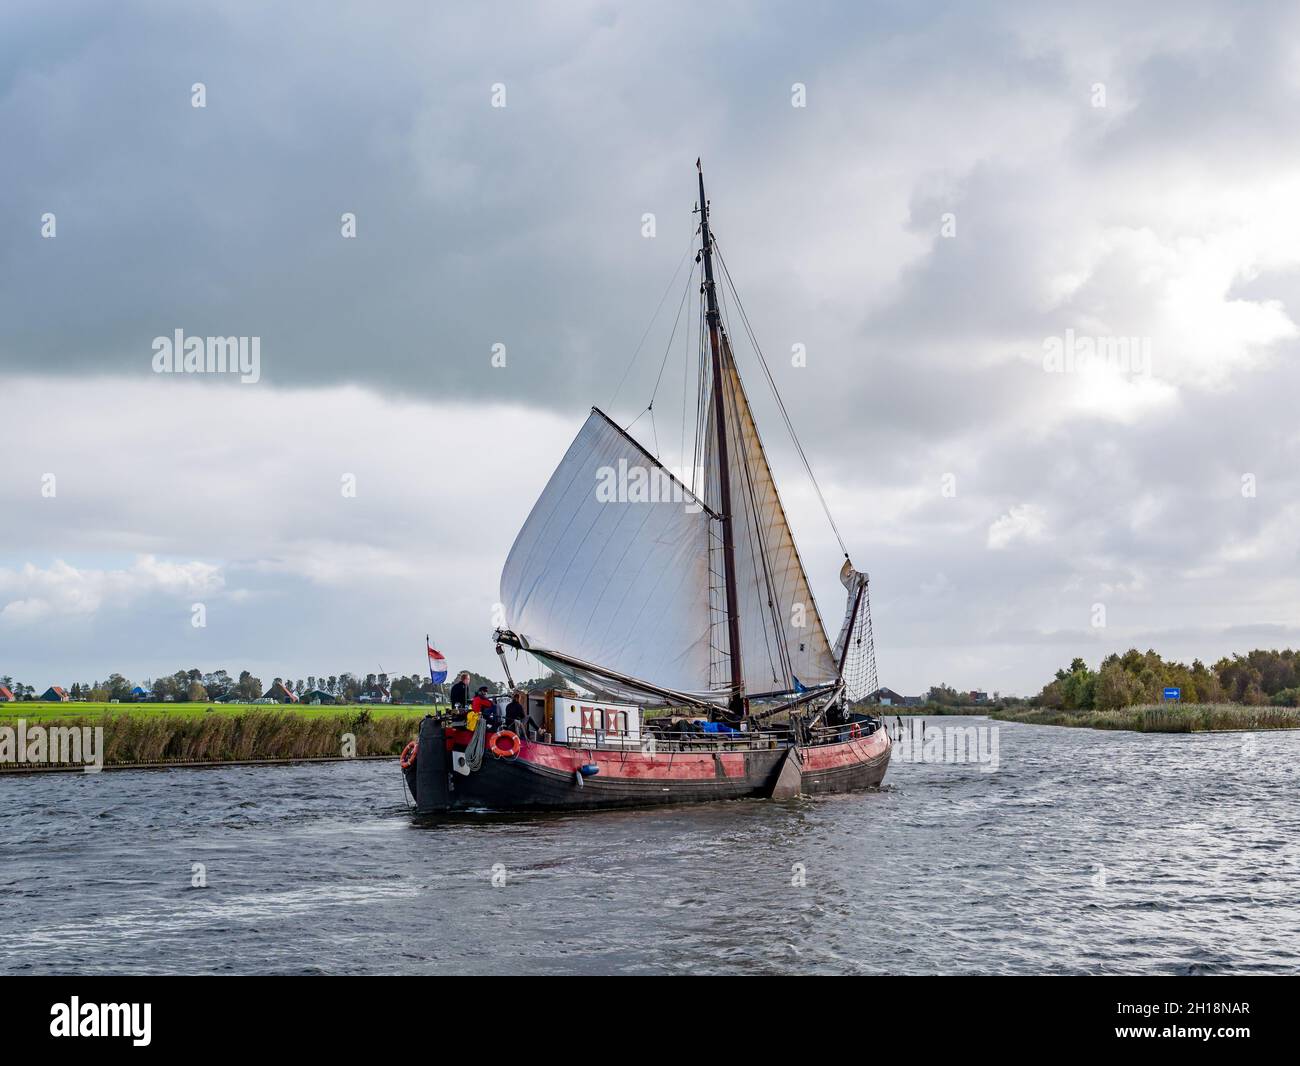 People sailing on traditional sailboat on Jeltesloot in De Fryske Marren, Friesland, Netherlands Stock Photo